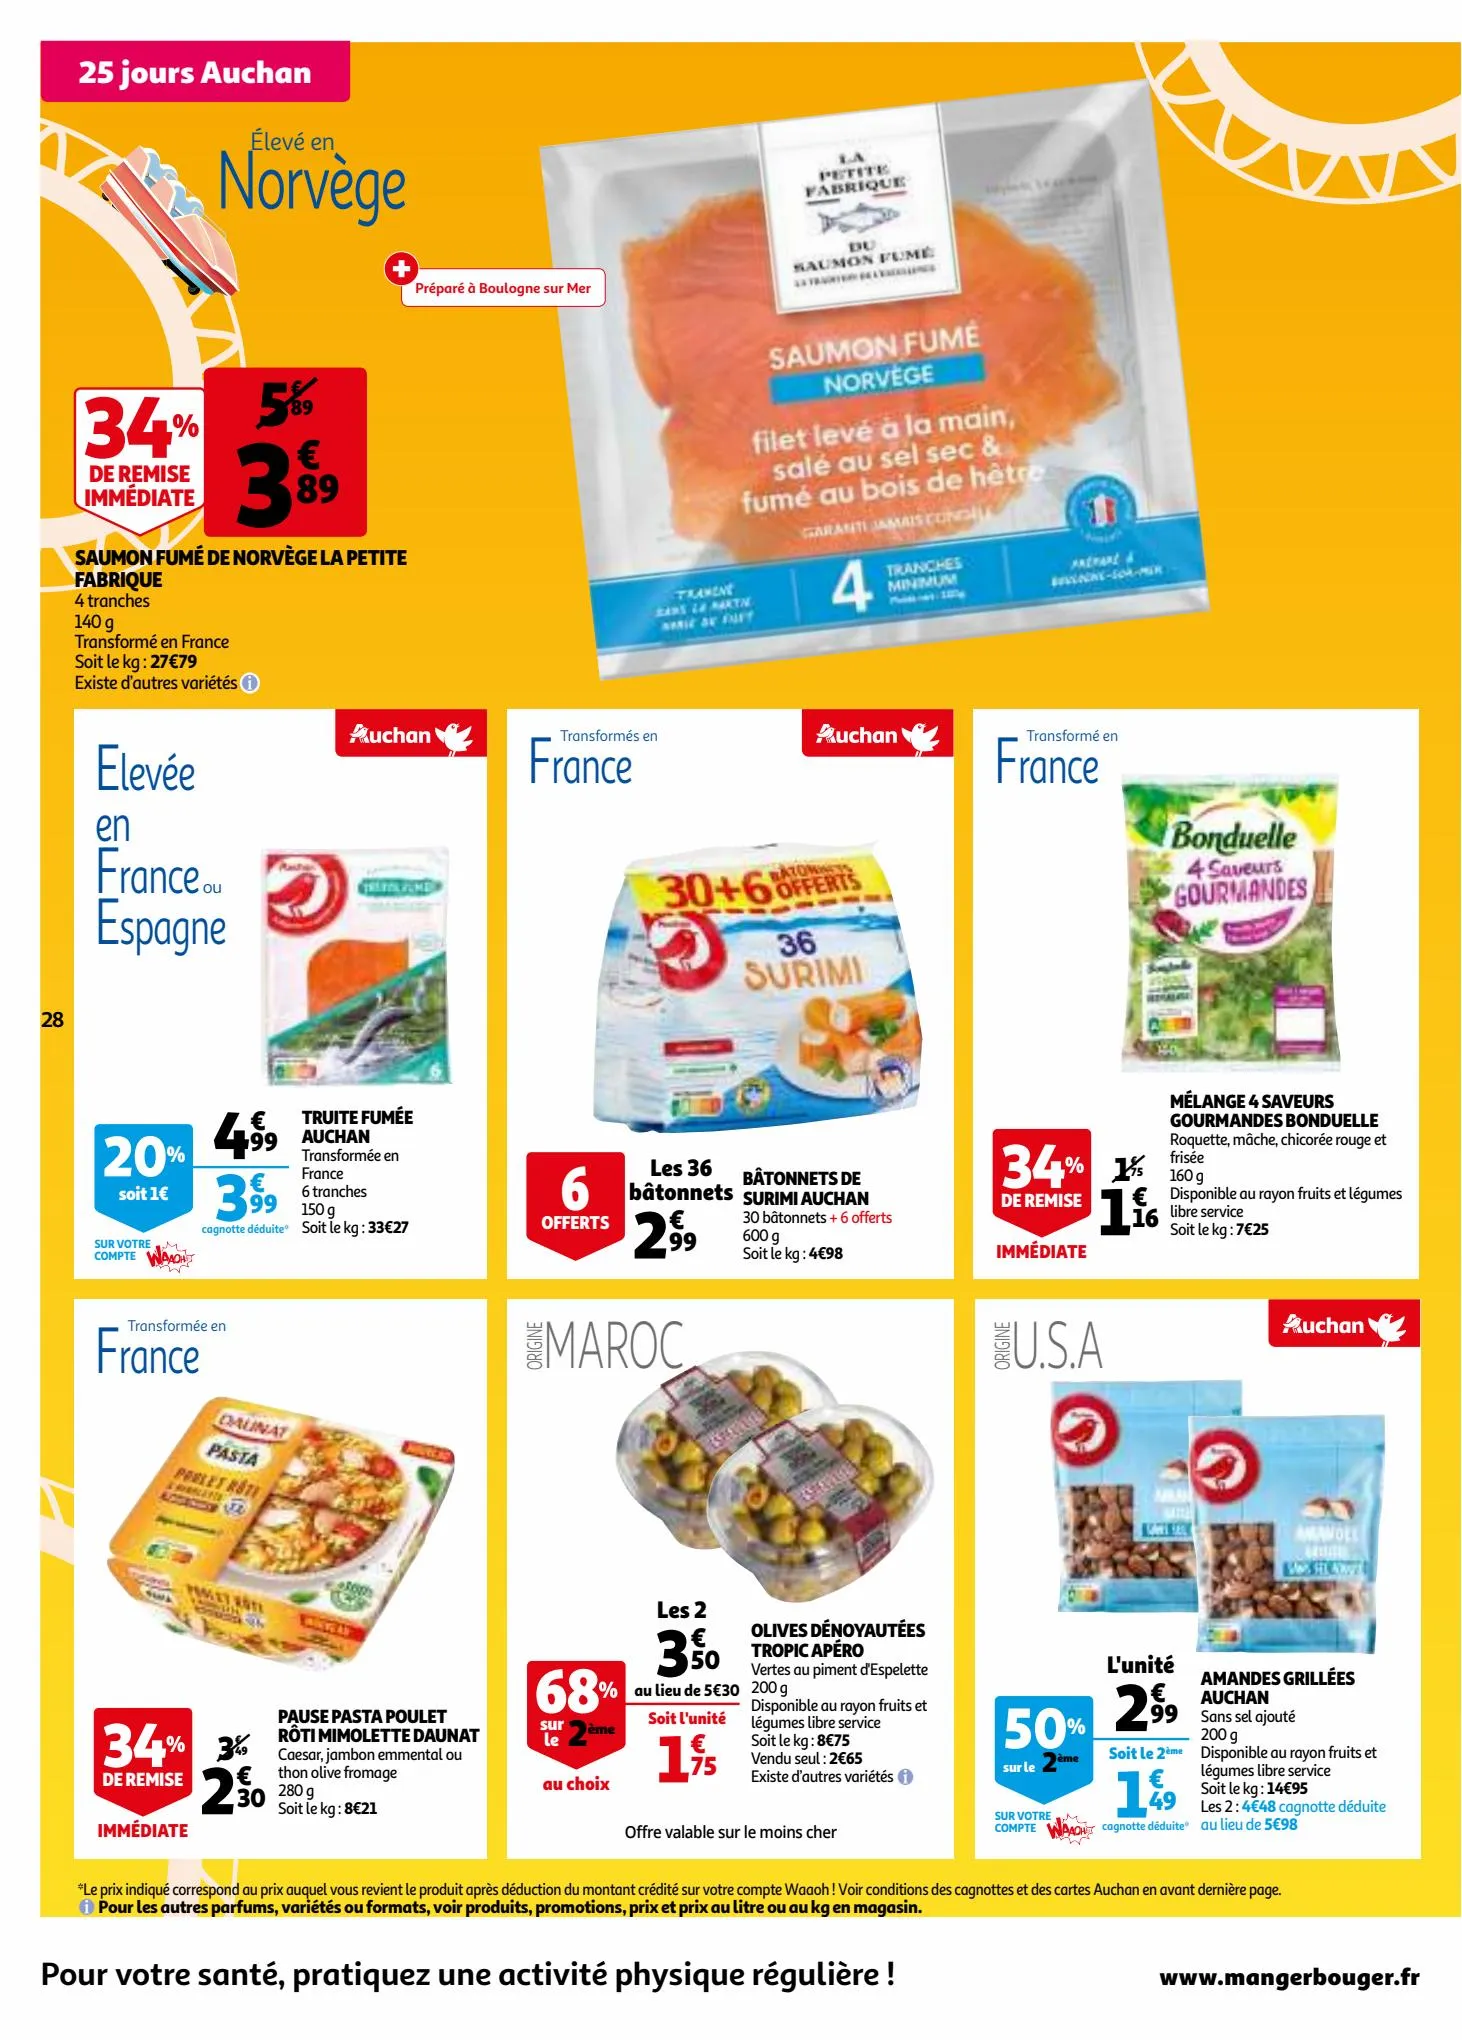 Catalogue 25 jours Auchan, page 00028